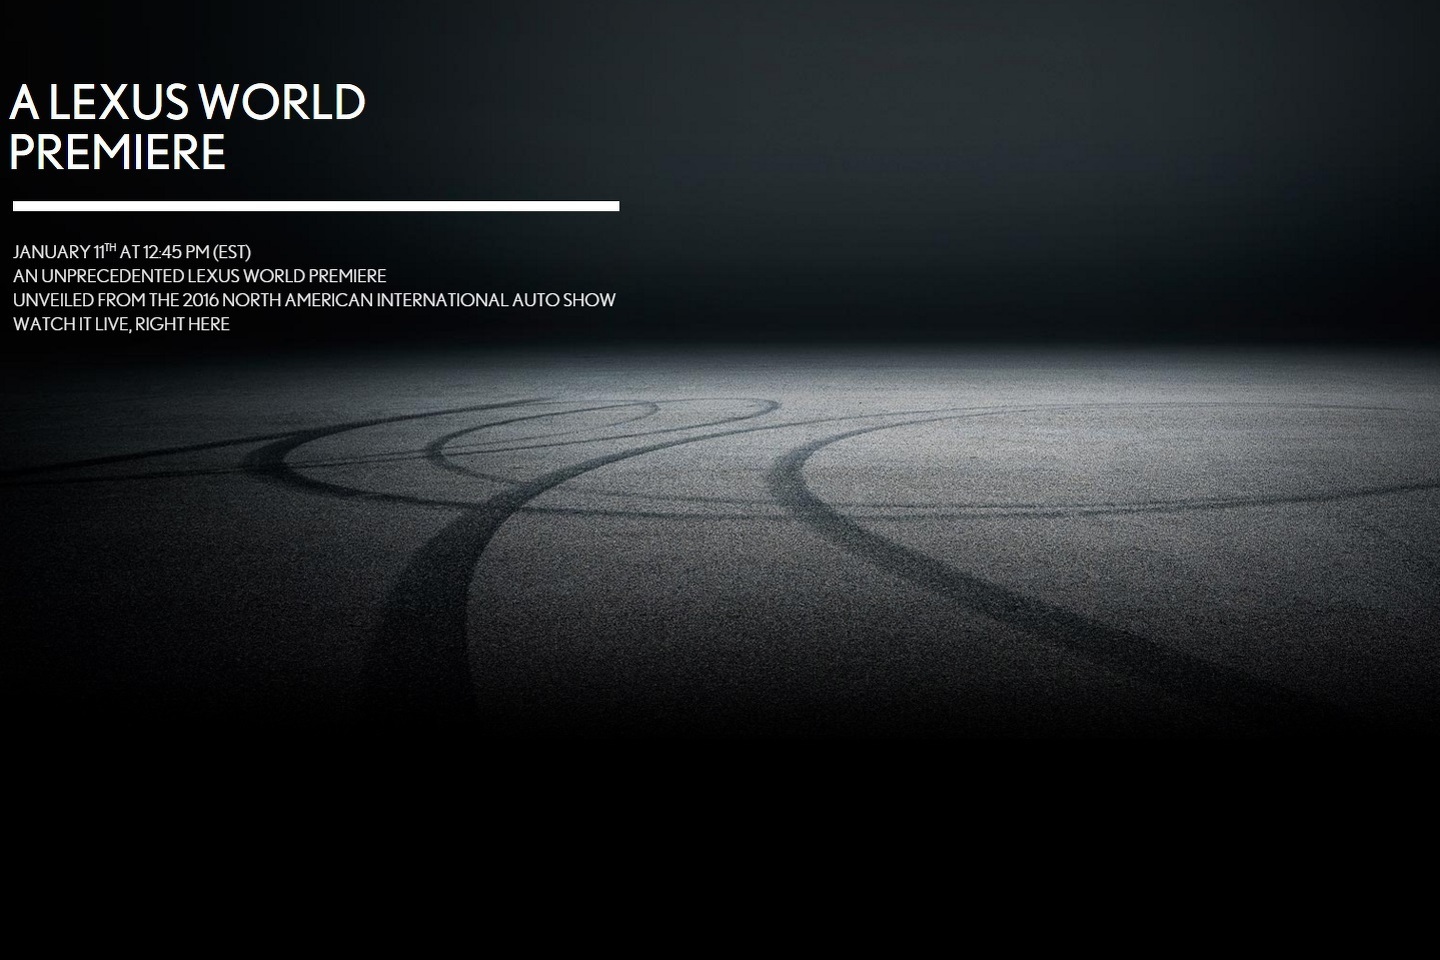 Tην παγκόσμια πρεμιέρα ενός νέου μοντέλου προαναγγέλλει η Lexus για το Detroit